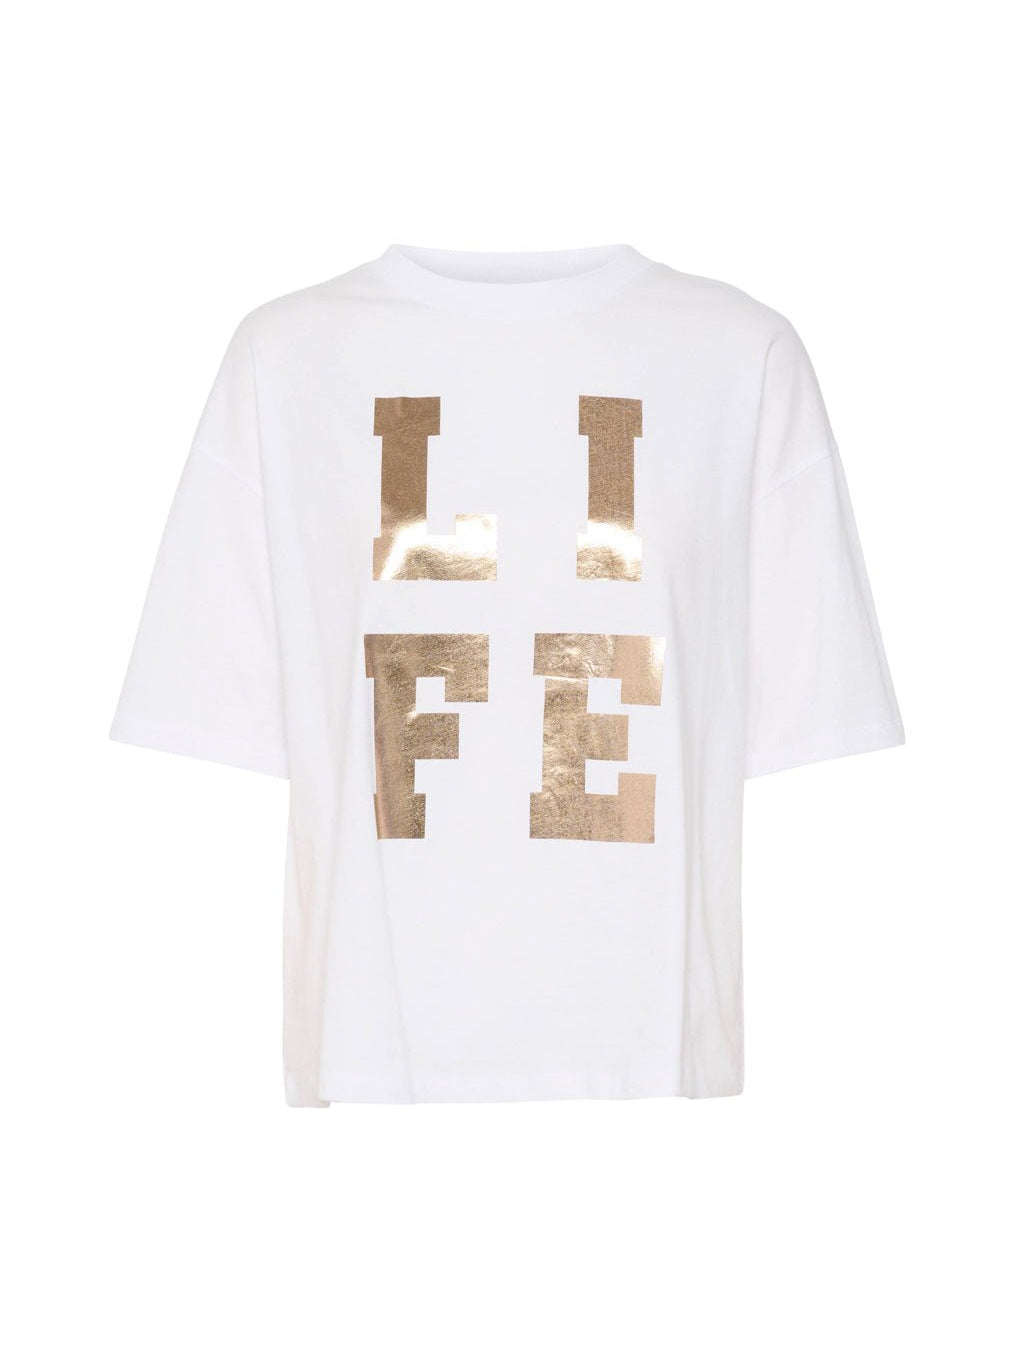 Kaffe KAharper t-shirt optical white - Online-Mode